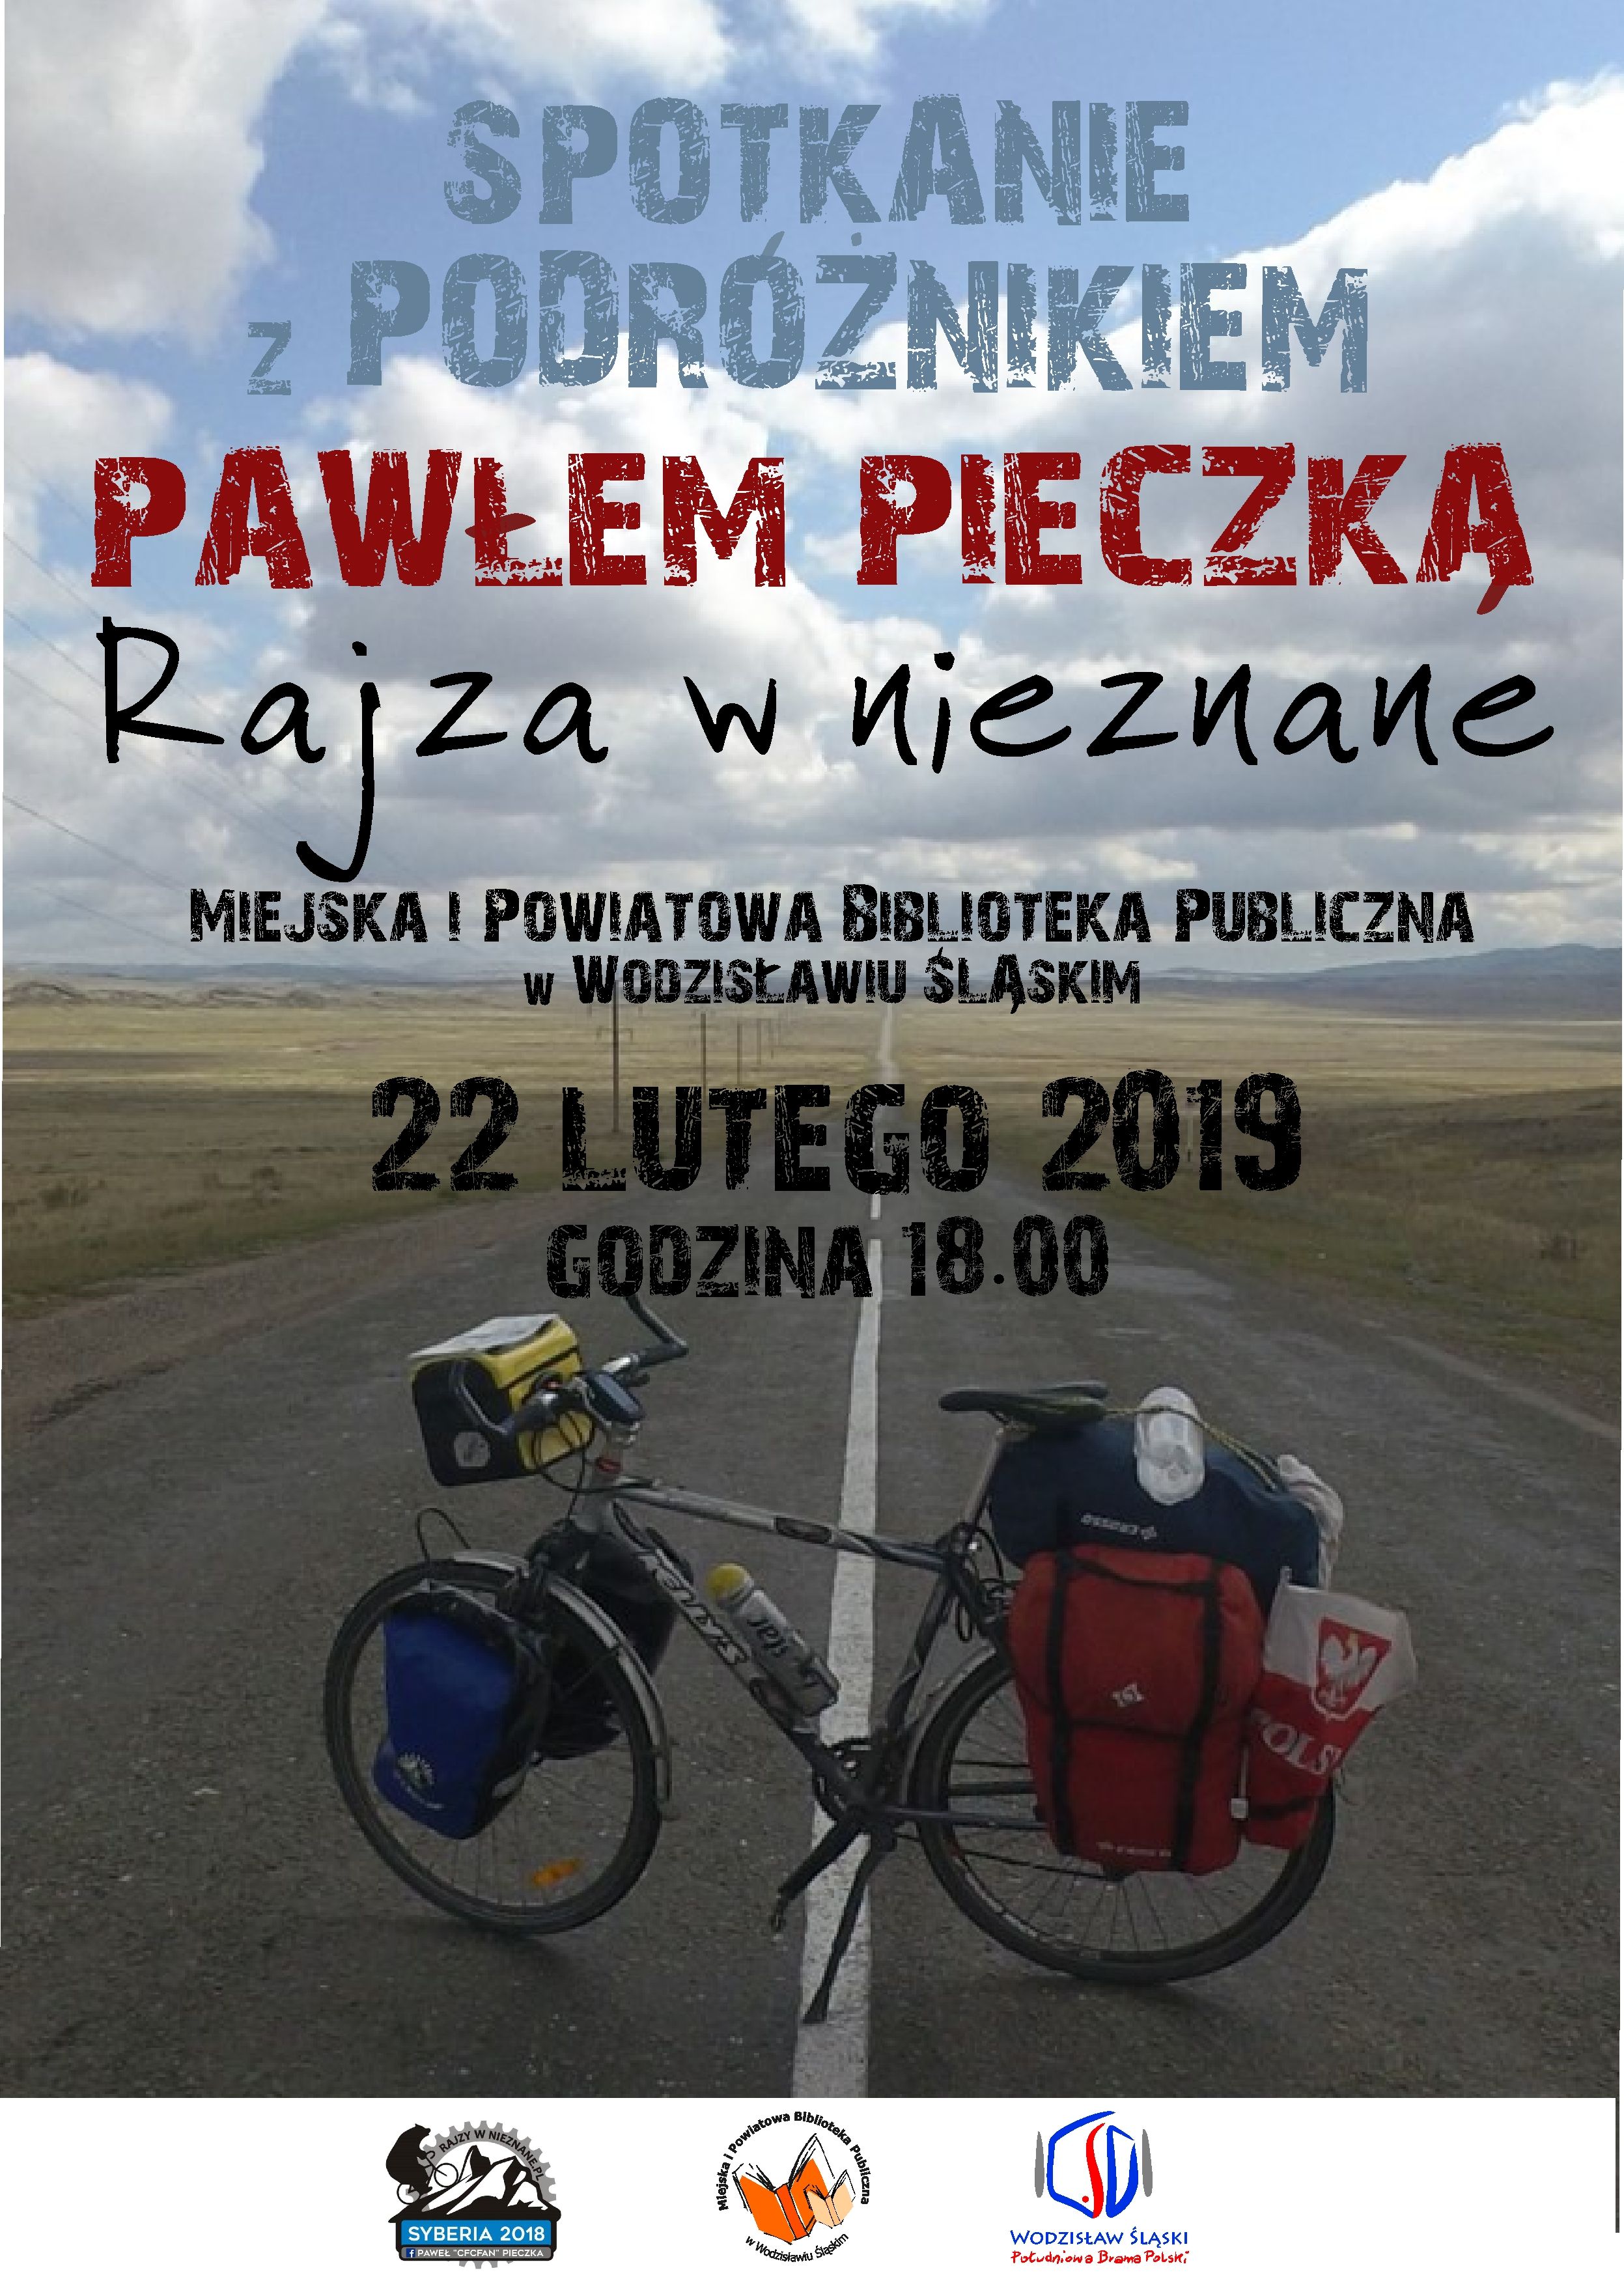 Paweł Pieczka – Plakat